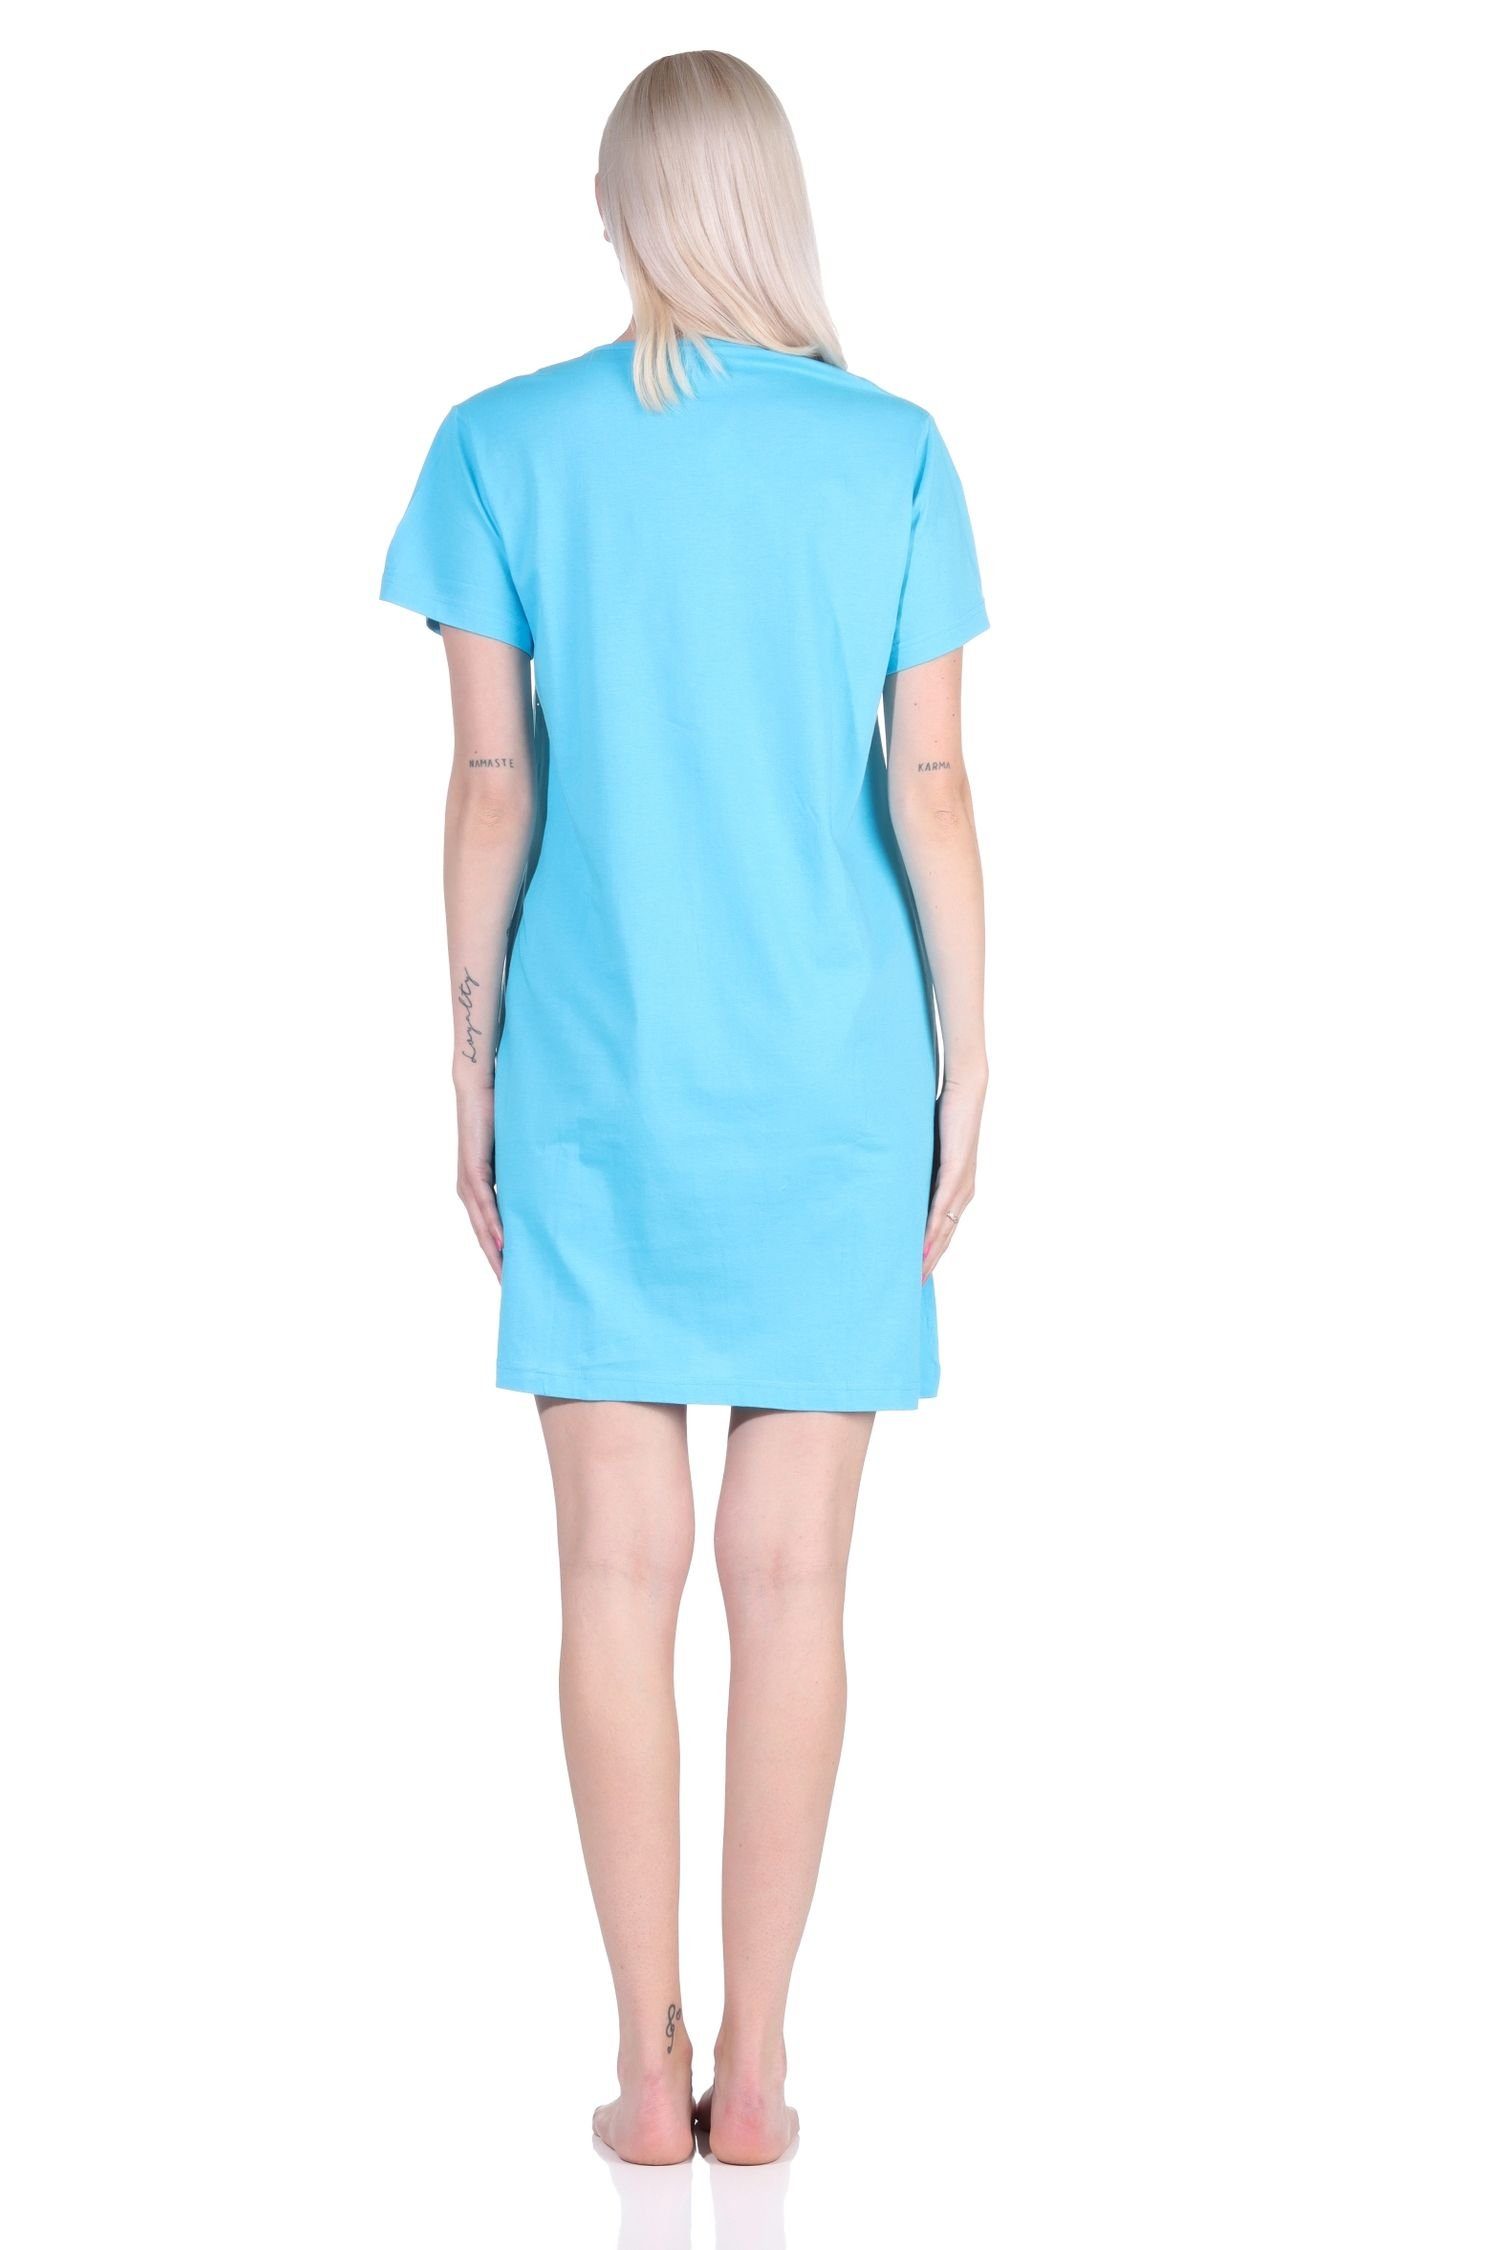 Normann Nachthemd Damen 2er Pack kurzarm Schlafshirt Nachthemd Designs in farbenfrohen